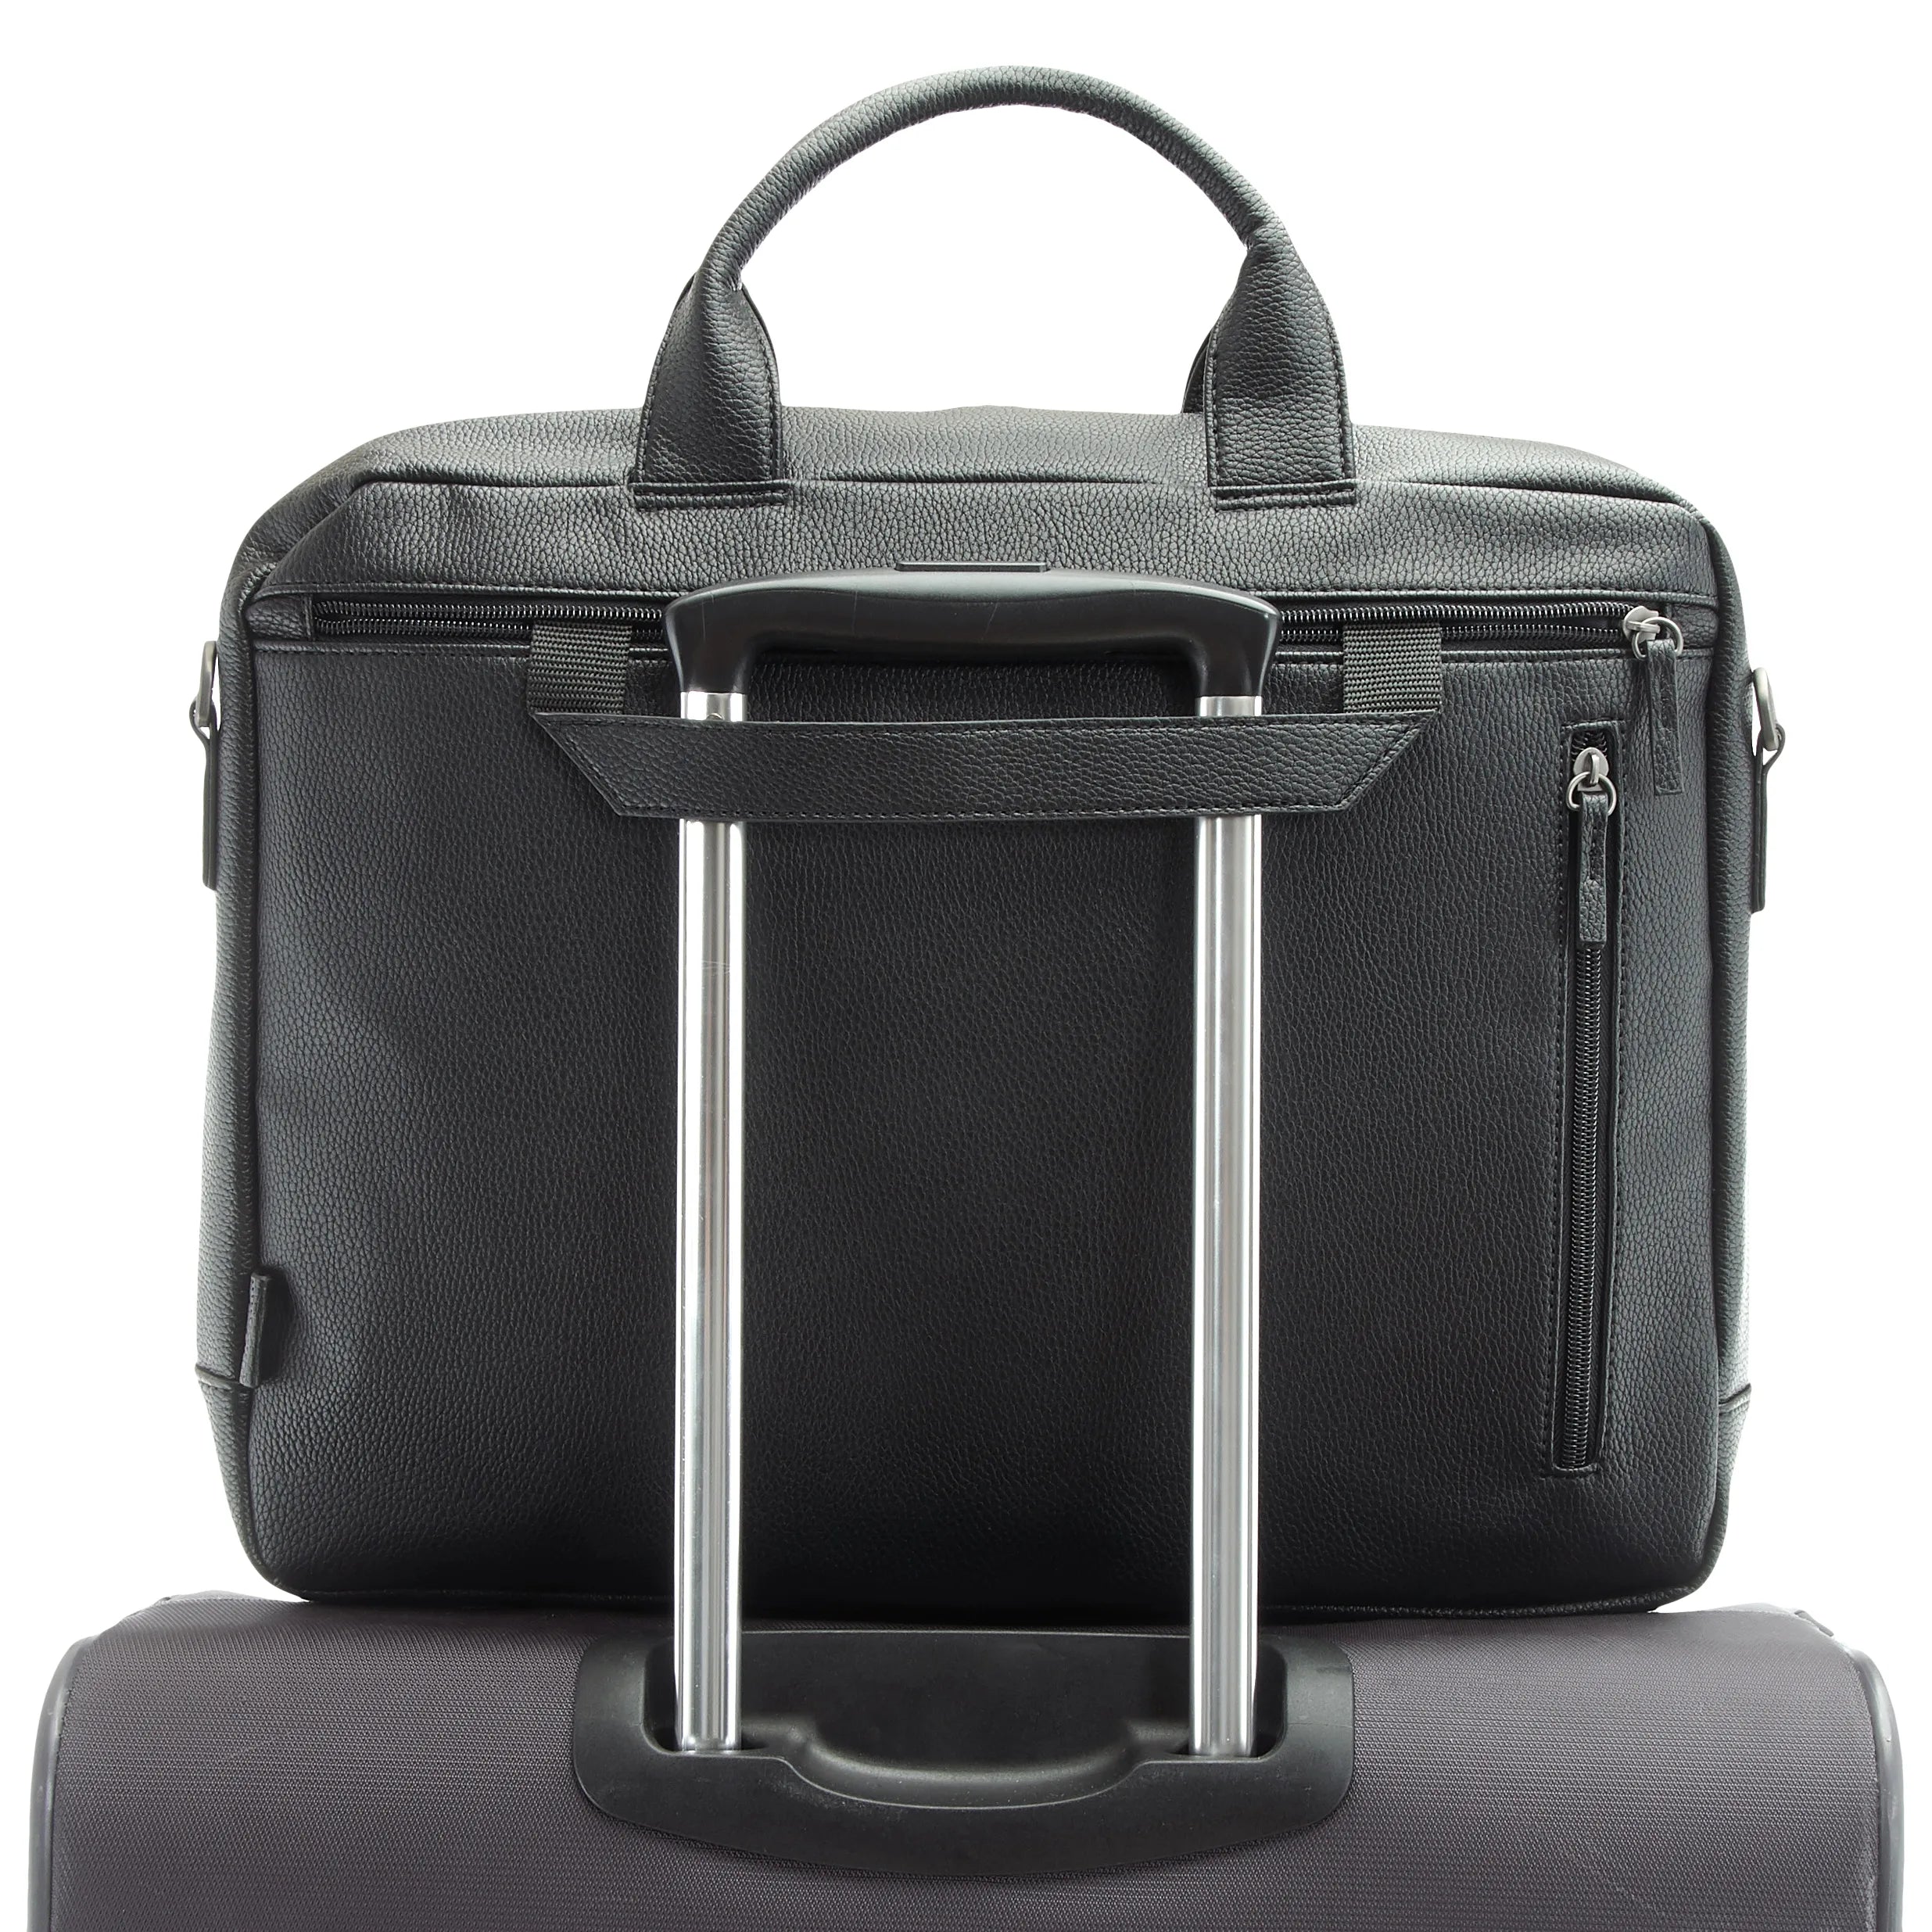 Jost Bodo II business bag 40 cm - black